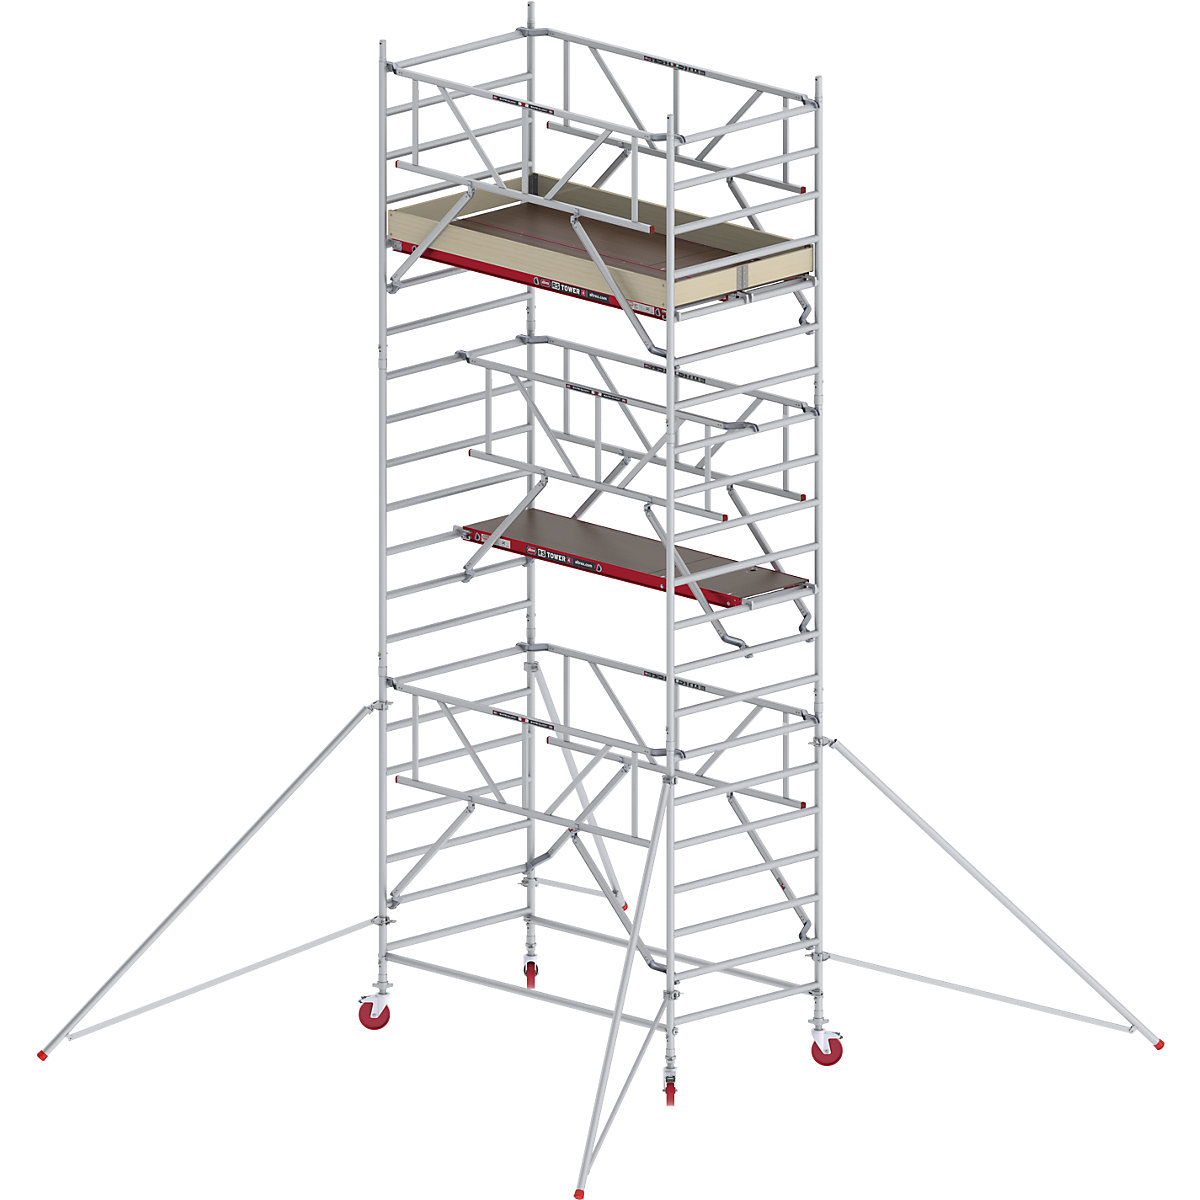 Trabattello mobile RS TOWER 42 largo con Safe-Quick® – Altrex, piattaforma in legno, lunghezza 2,45 m, altezza di lavoro 7,20 m-6